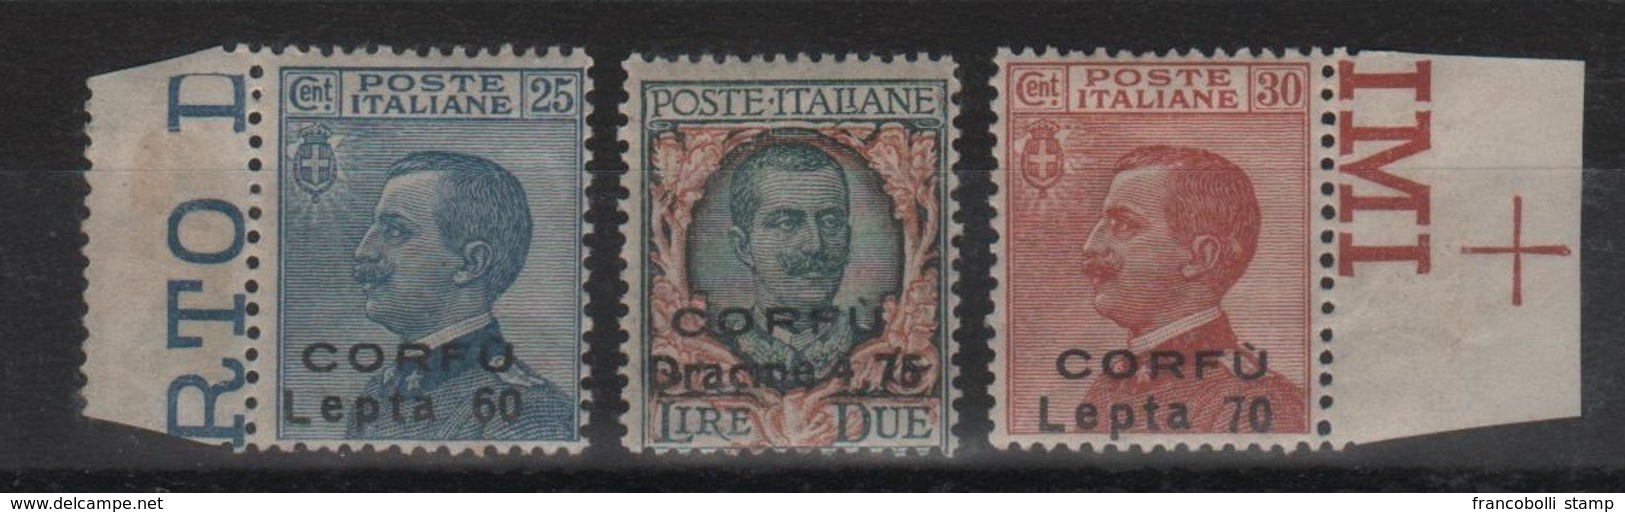 1923 Occupazione Corfù Francobolli D'Italia Sopr. CORFU Serie Cpl MNH Non Emessi - Corfu